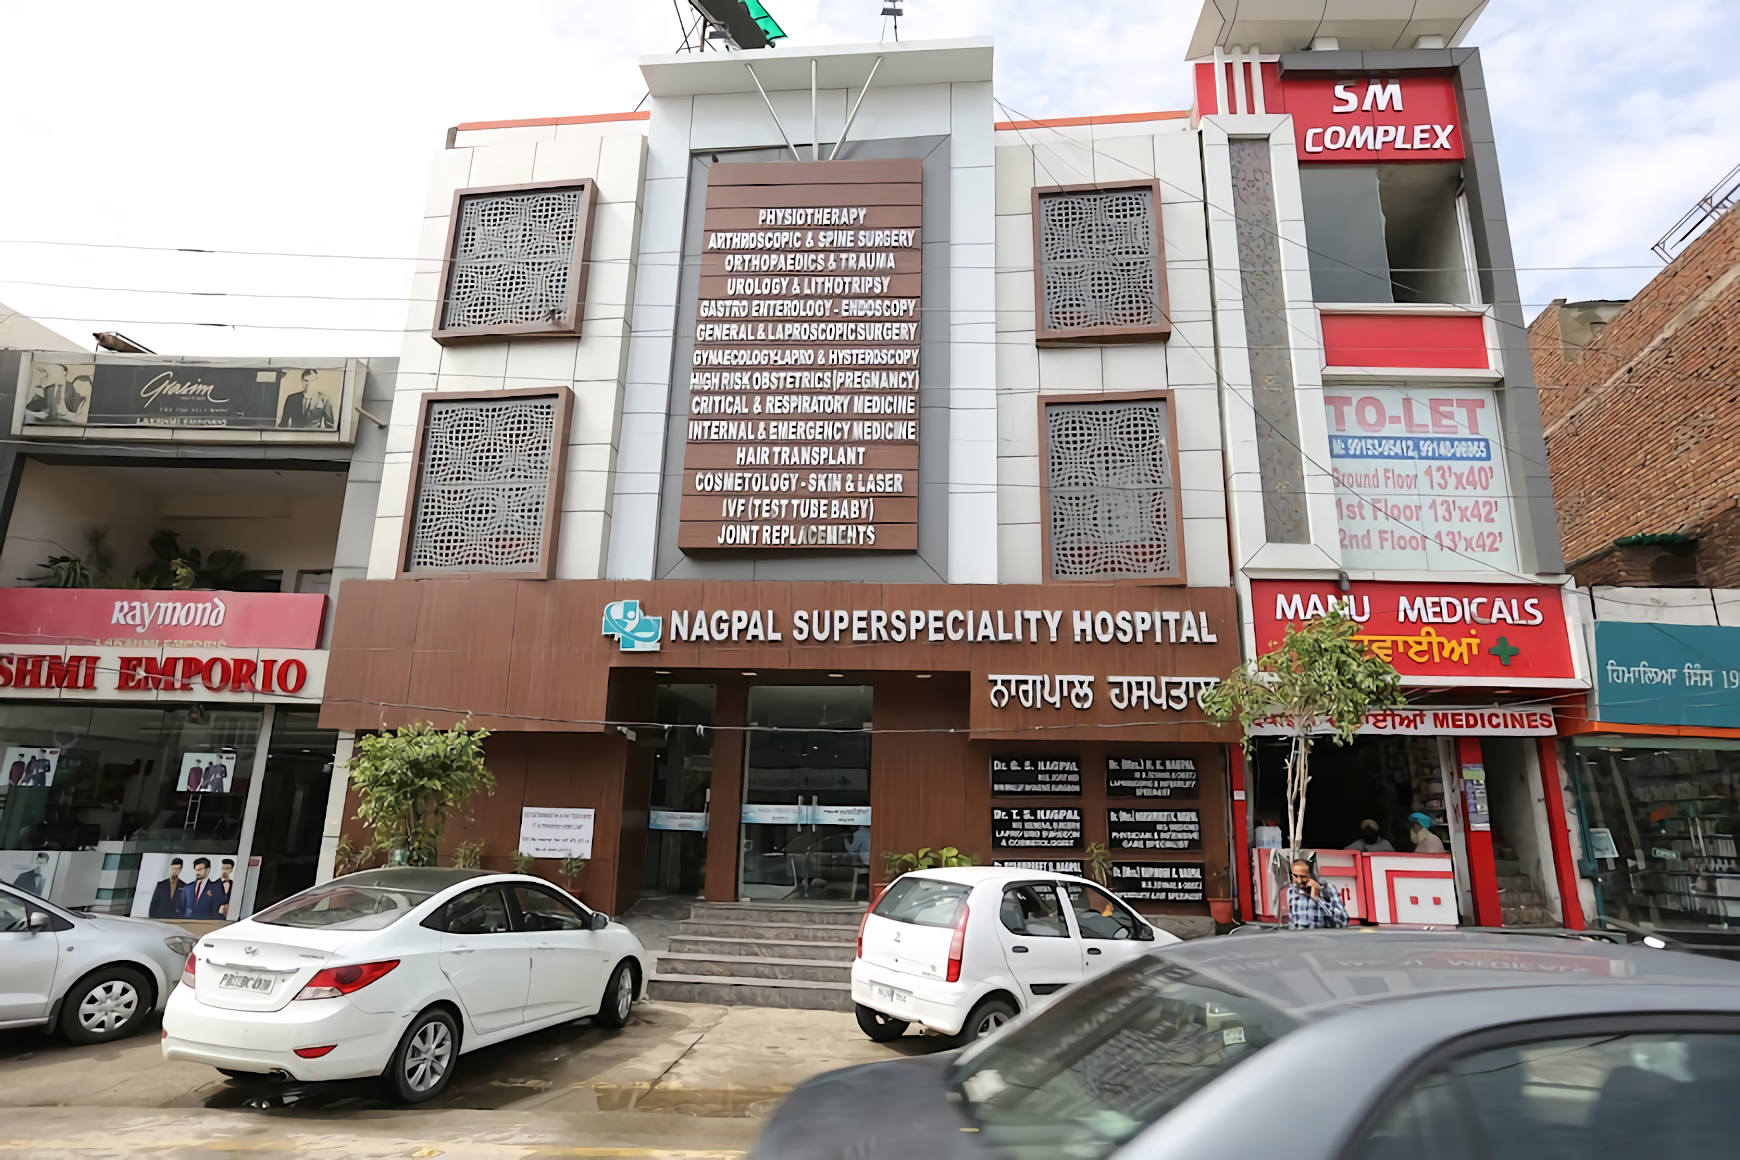 Nagpal Superspeciality Hospital